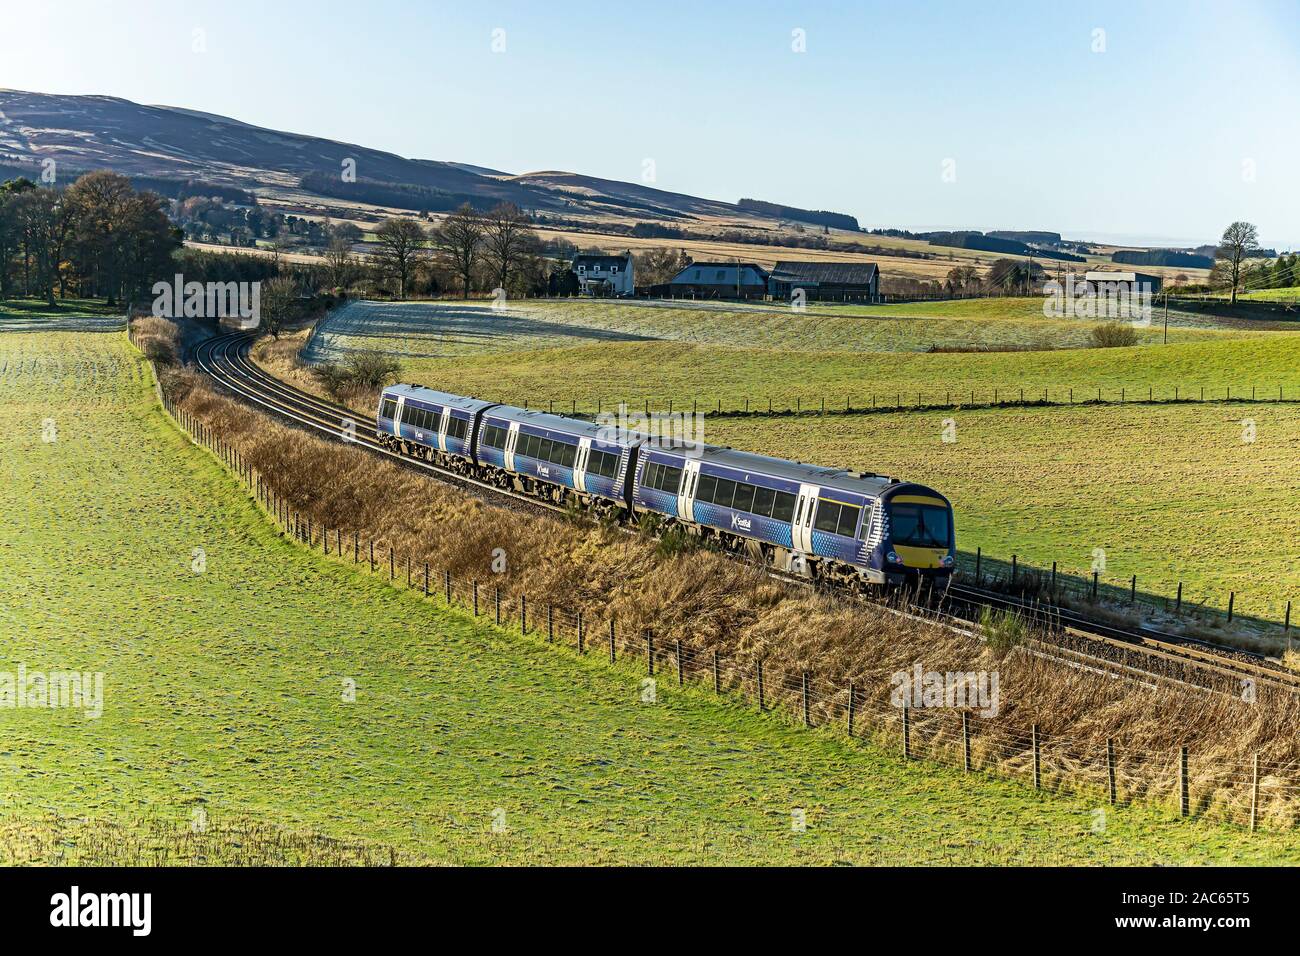 Scotrail Class 170 DMU train de voyageurs se dirigeant vers Aberdeen à l'ouest de Gleneagles Raillway Station par Auchterarter Perth & Kinross Scotland UK Banque D'Images